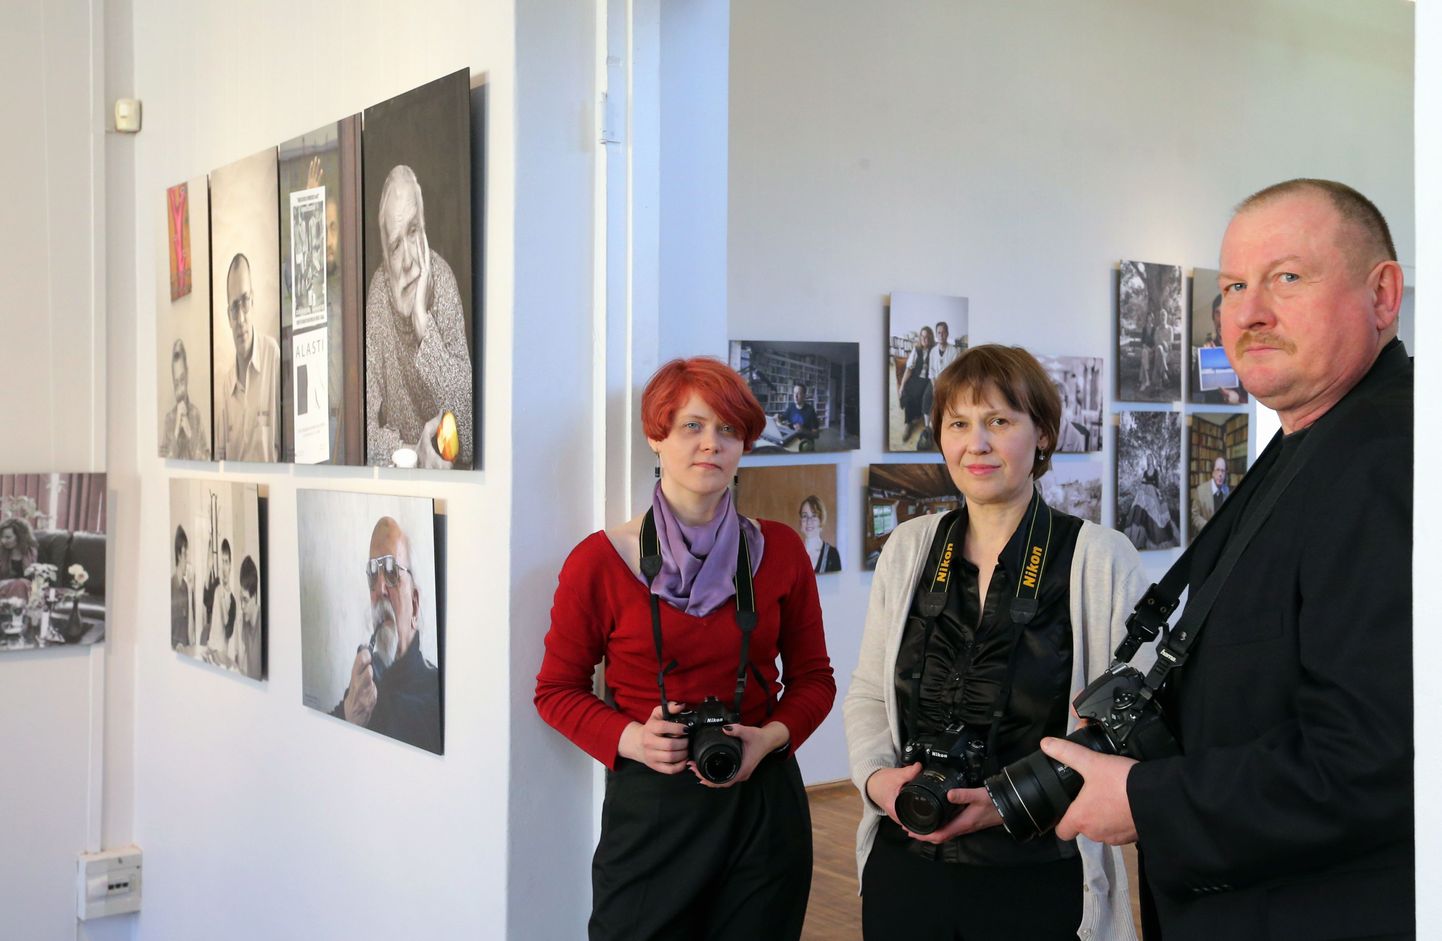 Näitust «Pooltund kirjanikega», milles oli valik fotosid aastaist 2001-2013, oli mullu kevadel võimalik vaadata Tartu kunstimajas. Pildil on Alar Madissoni kõrval näituse kuraatorid Krista Ojasaar (vasakult) ja Vilve Asmer.